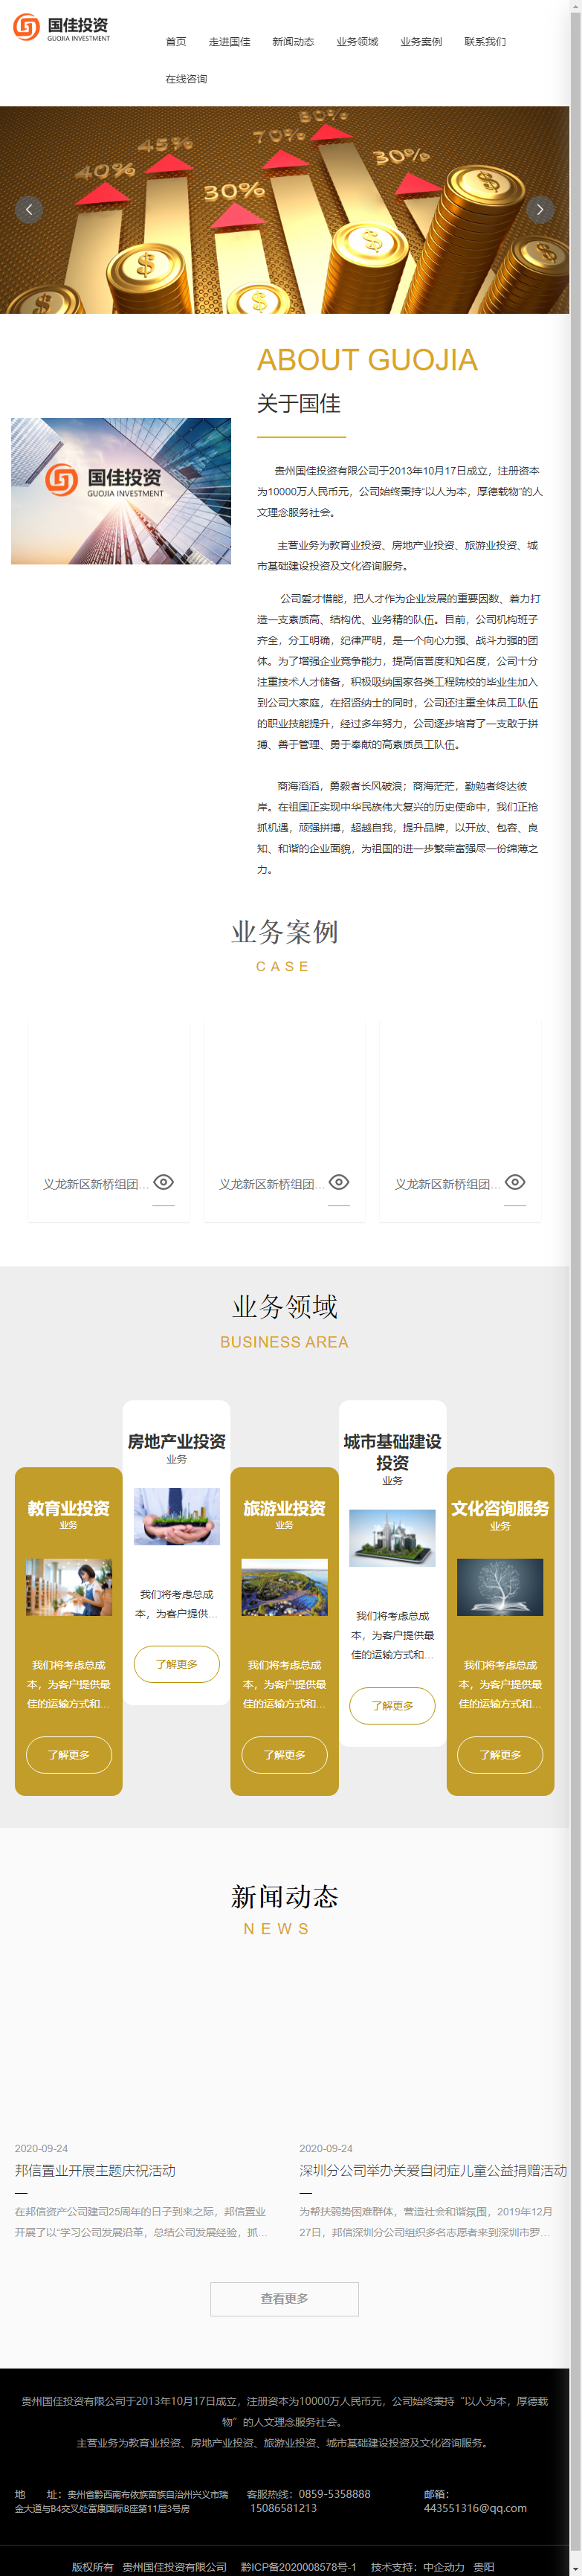 贵州国佳投资有限公司网站案例